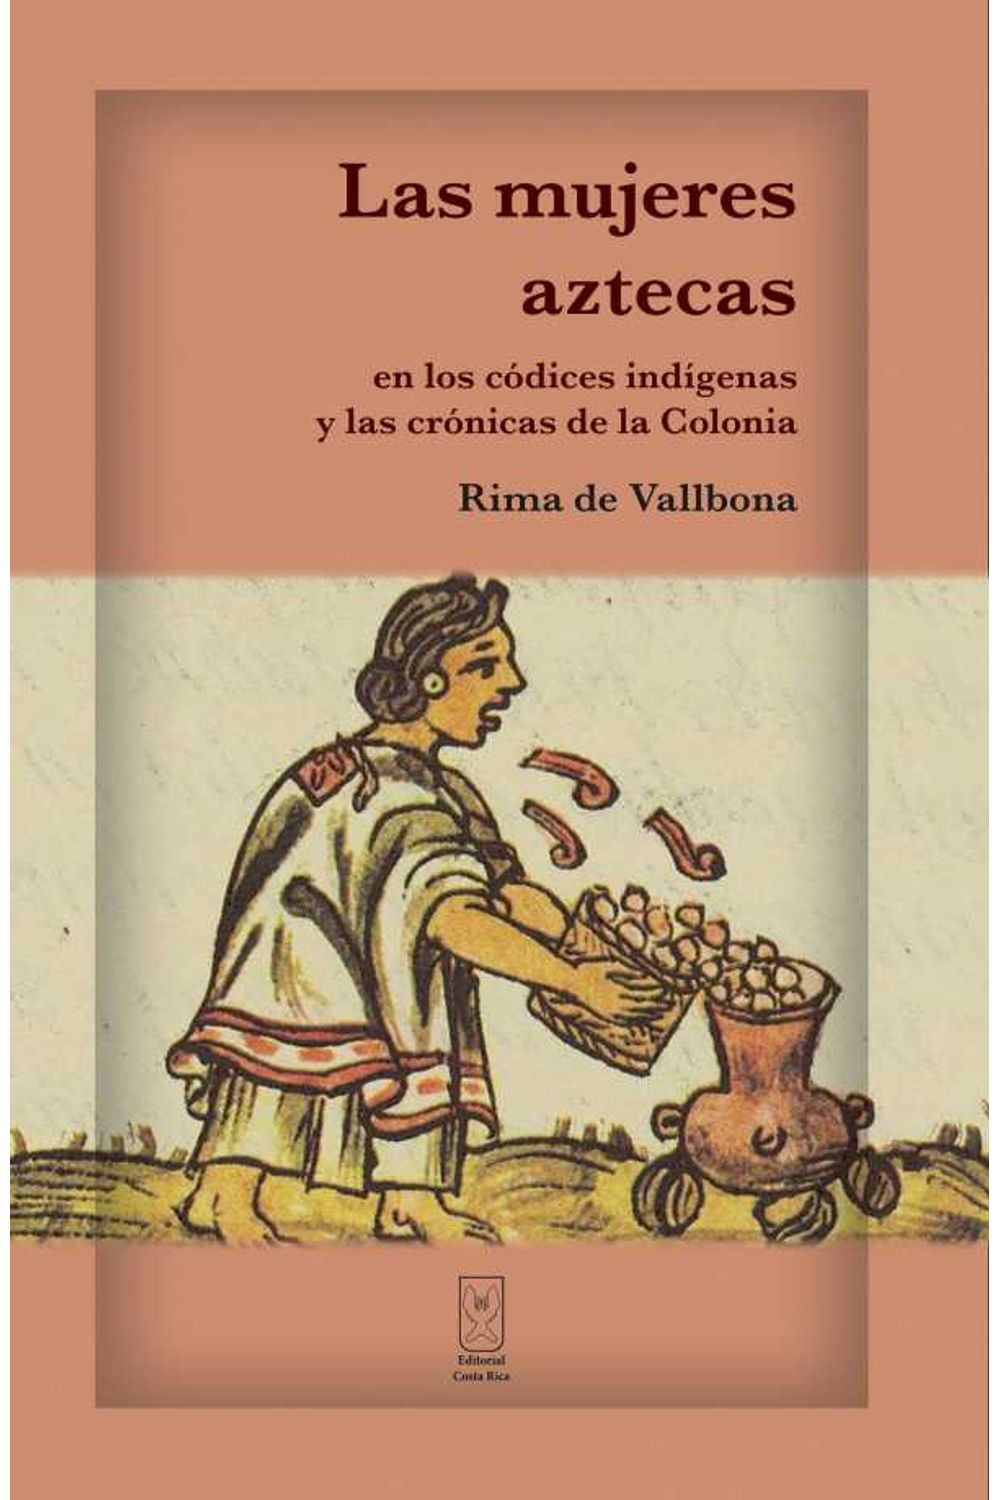 bw-las-mujeres-aztecas-en-los-coacutedices-indiacutegenas-y-las-croacutenicas-de-la-colonia-editorial-costa-rica-9789930580431